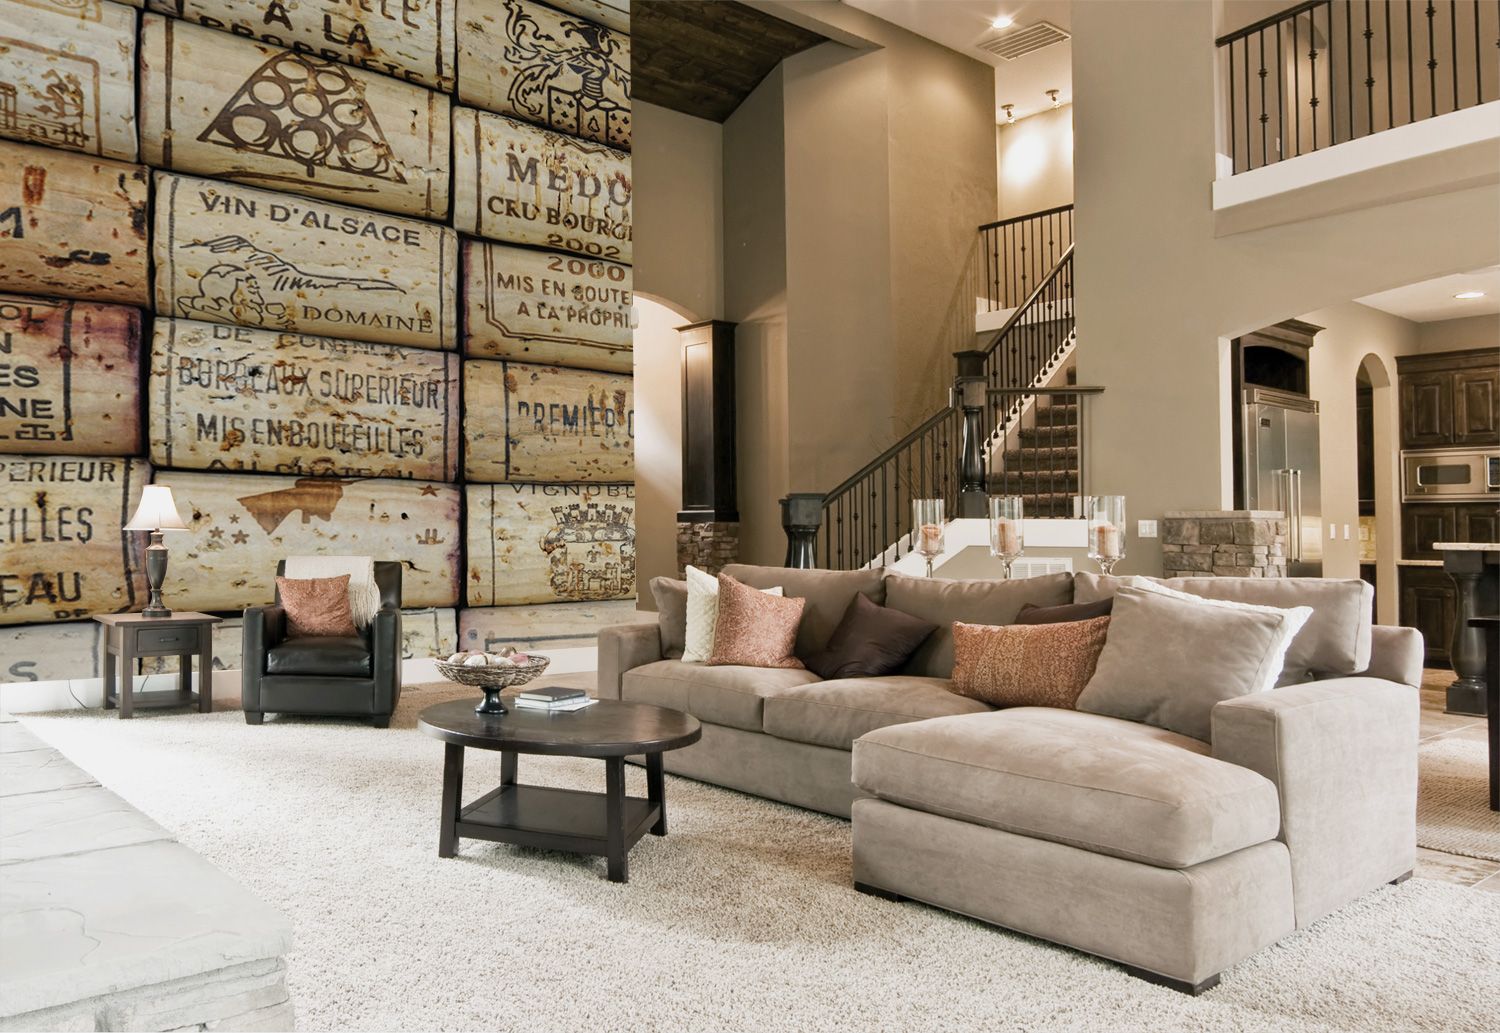 Wine-cork-wallpaper-in-living-room